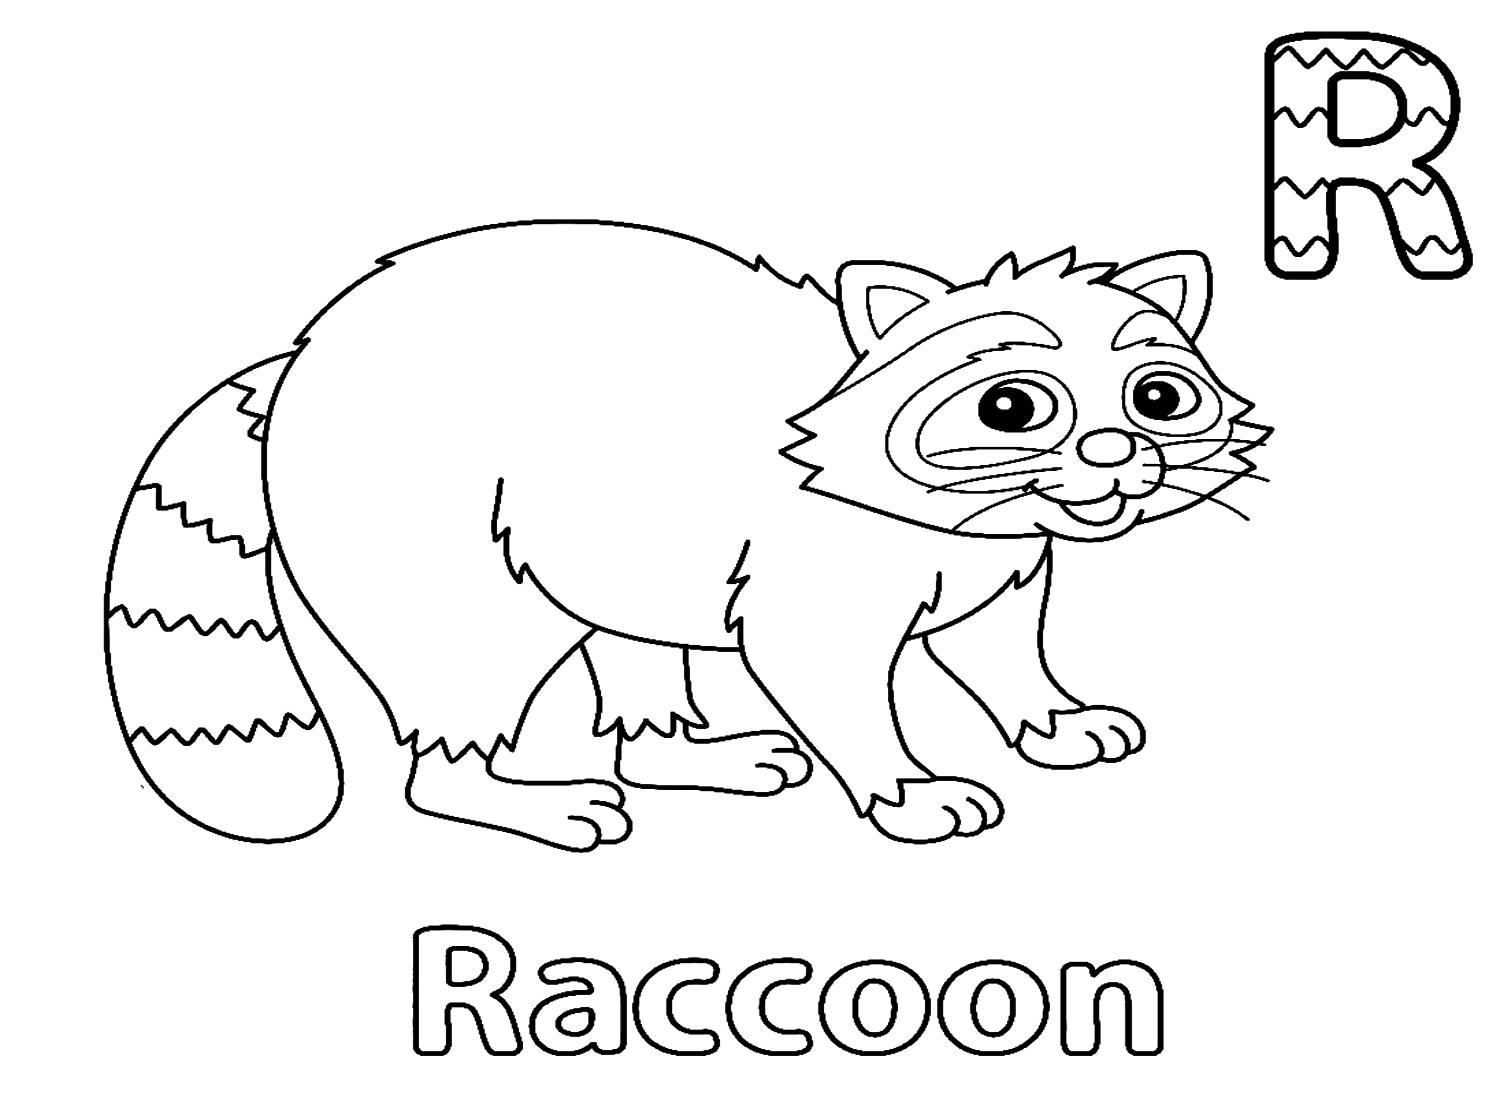 Letra R para mapache de Raccoon